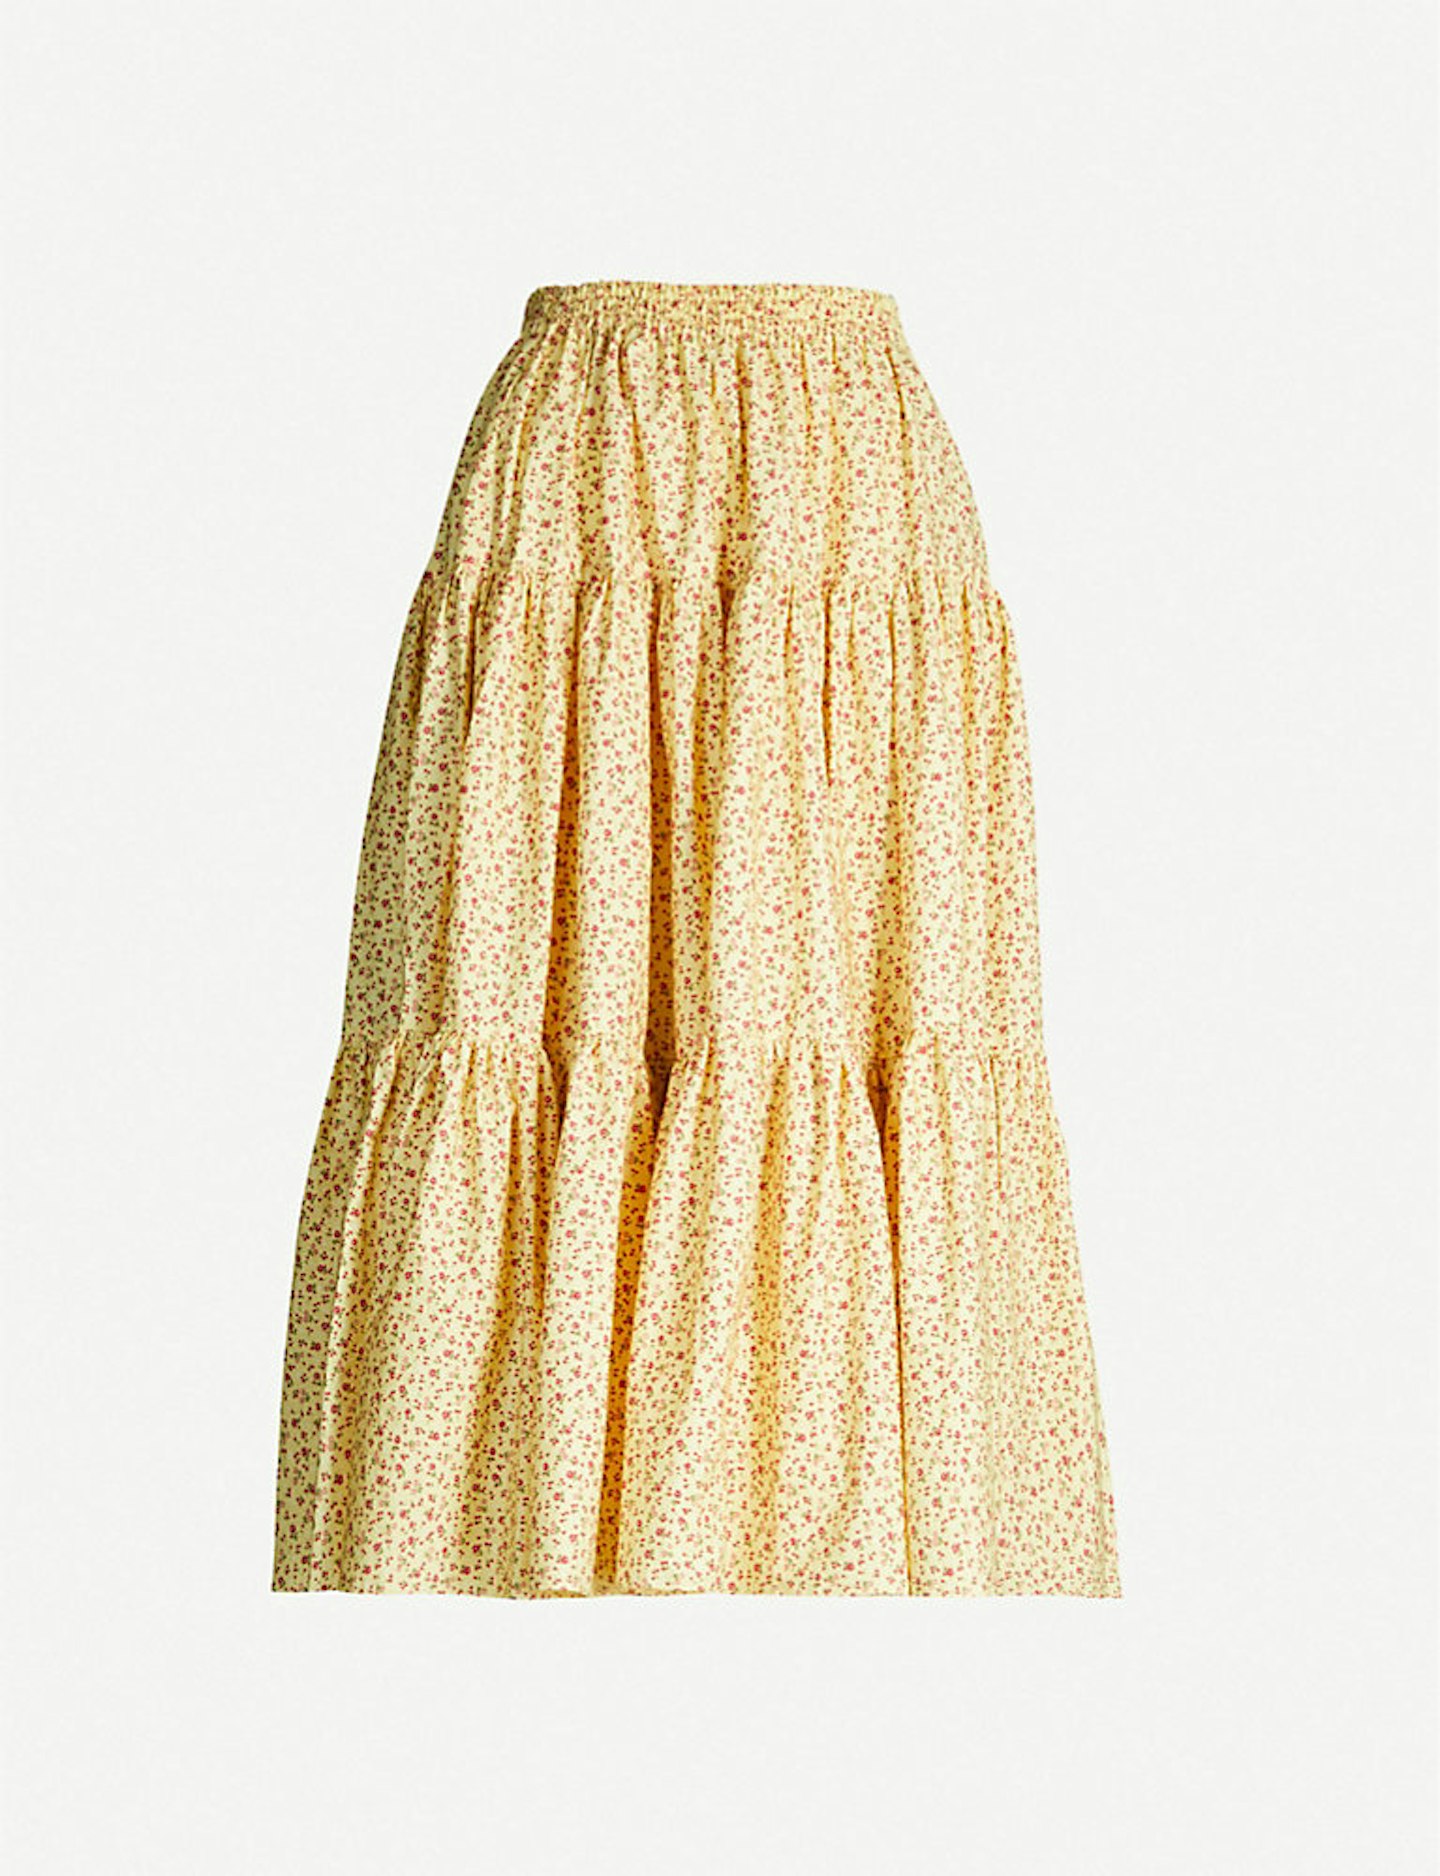 Batsheva printed skirt